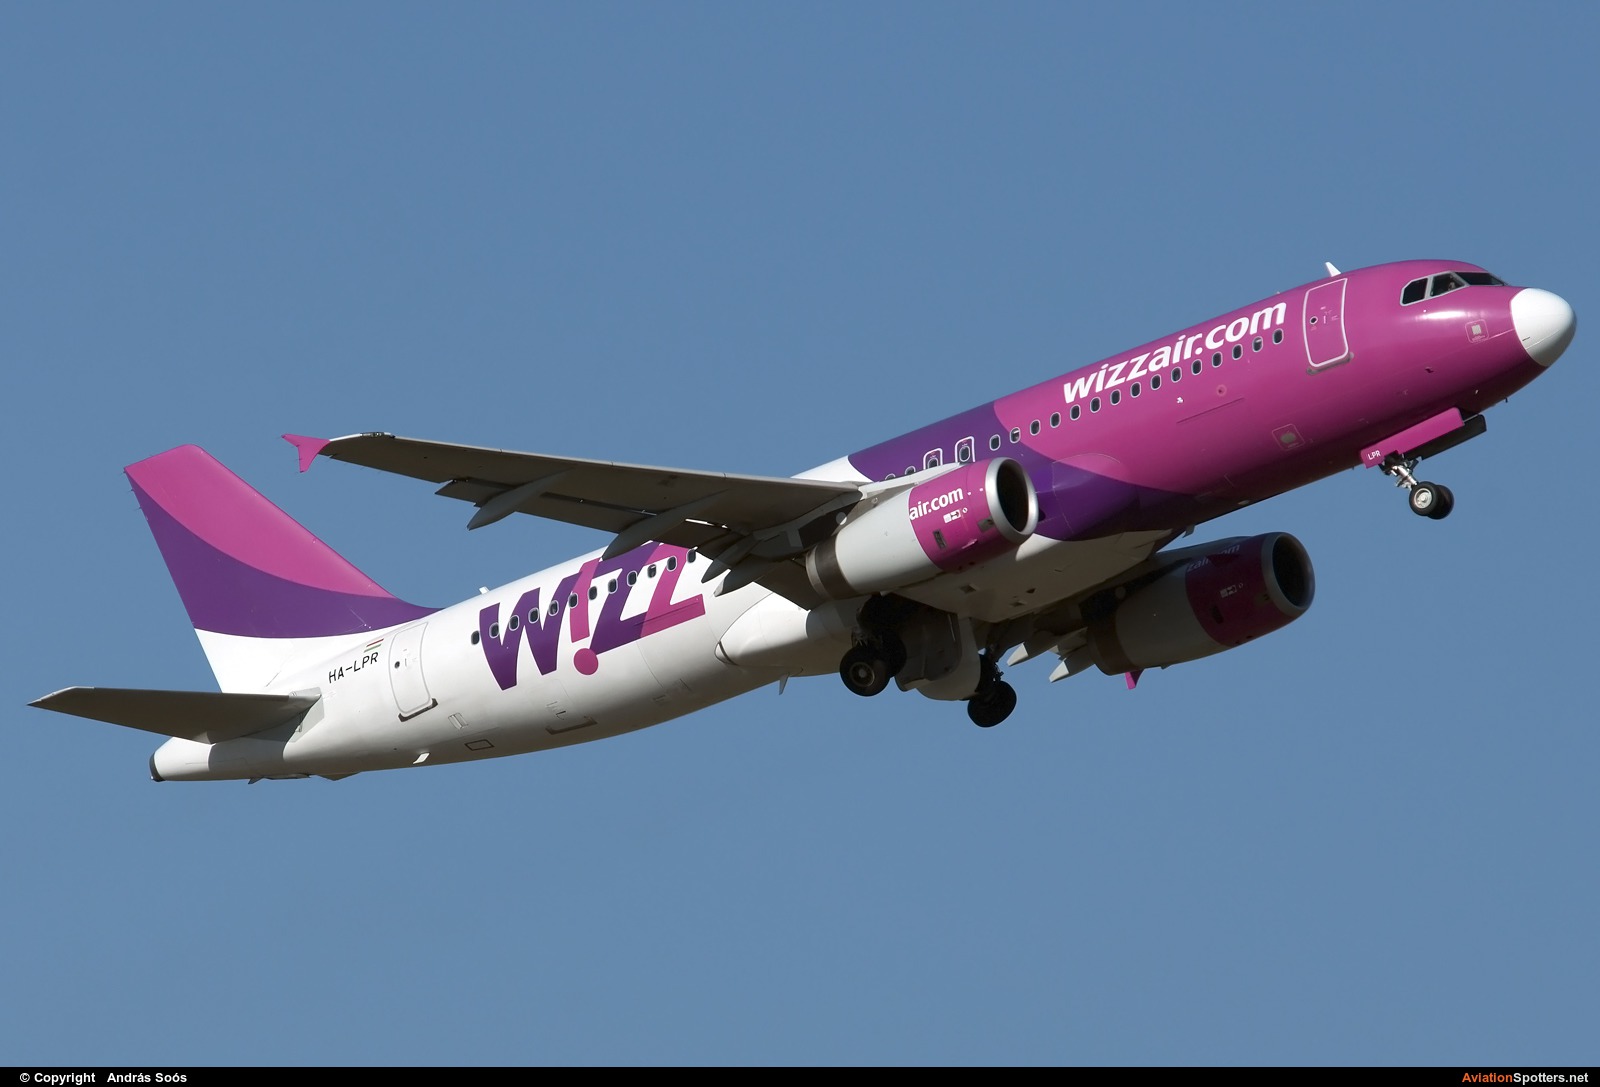 Wizz Air  -  A320  (HA-LPR) By András Soós (sas1965)